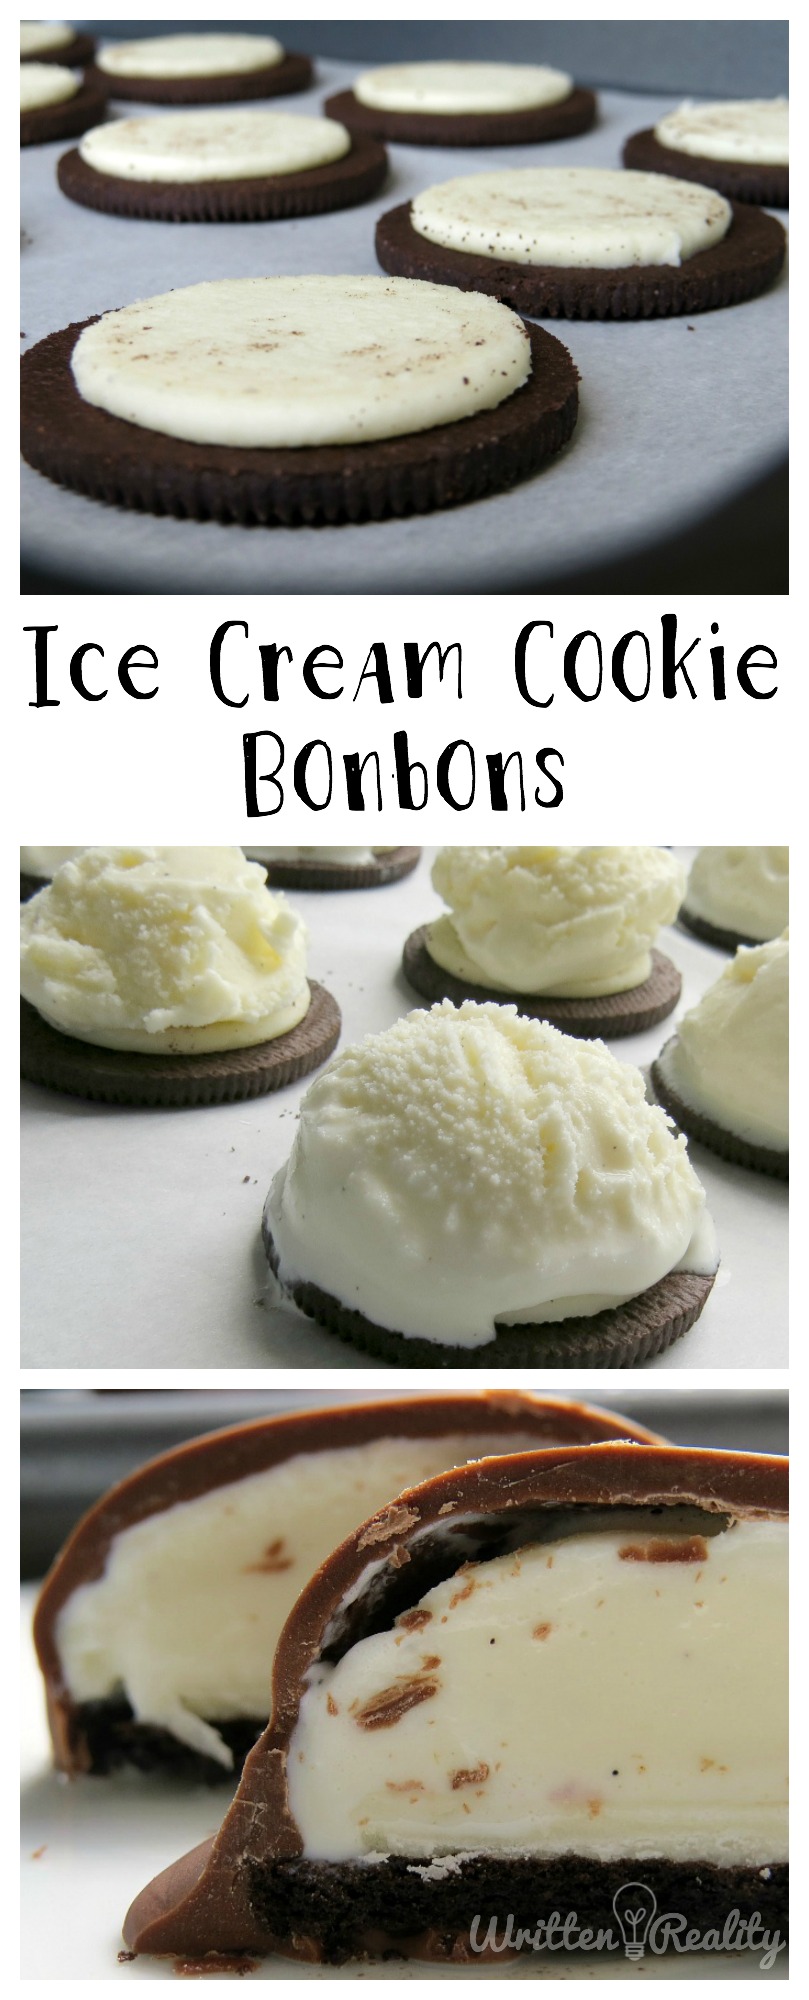 ice cream cookie bonbons recipe